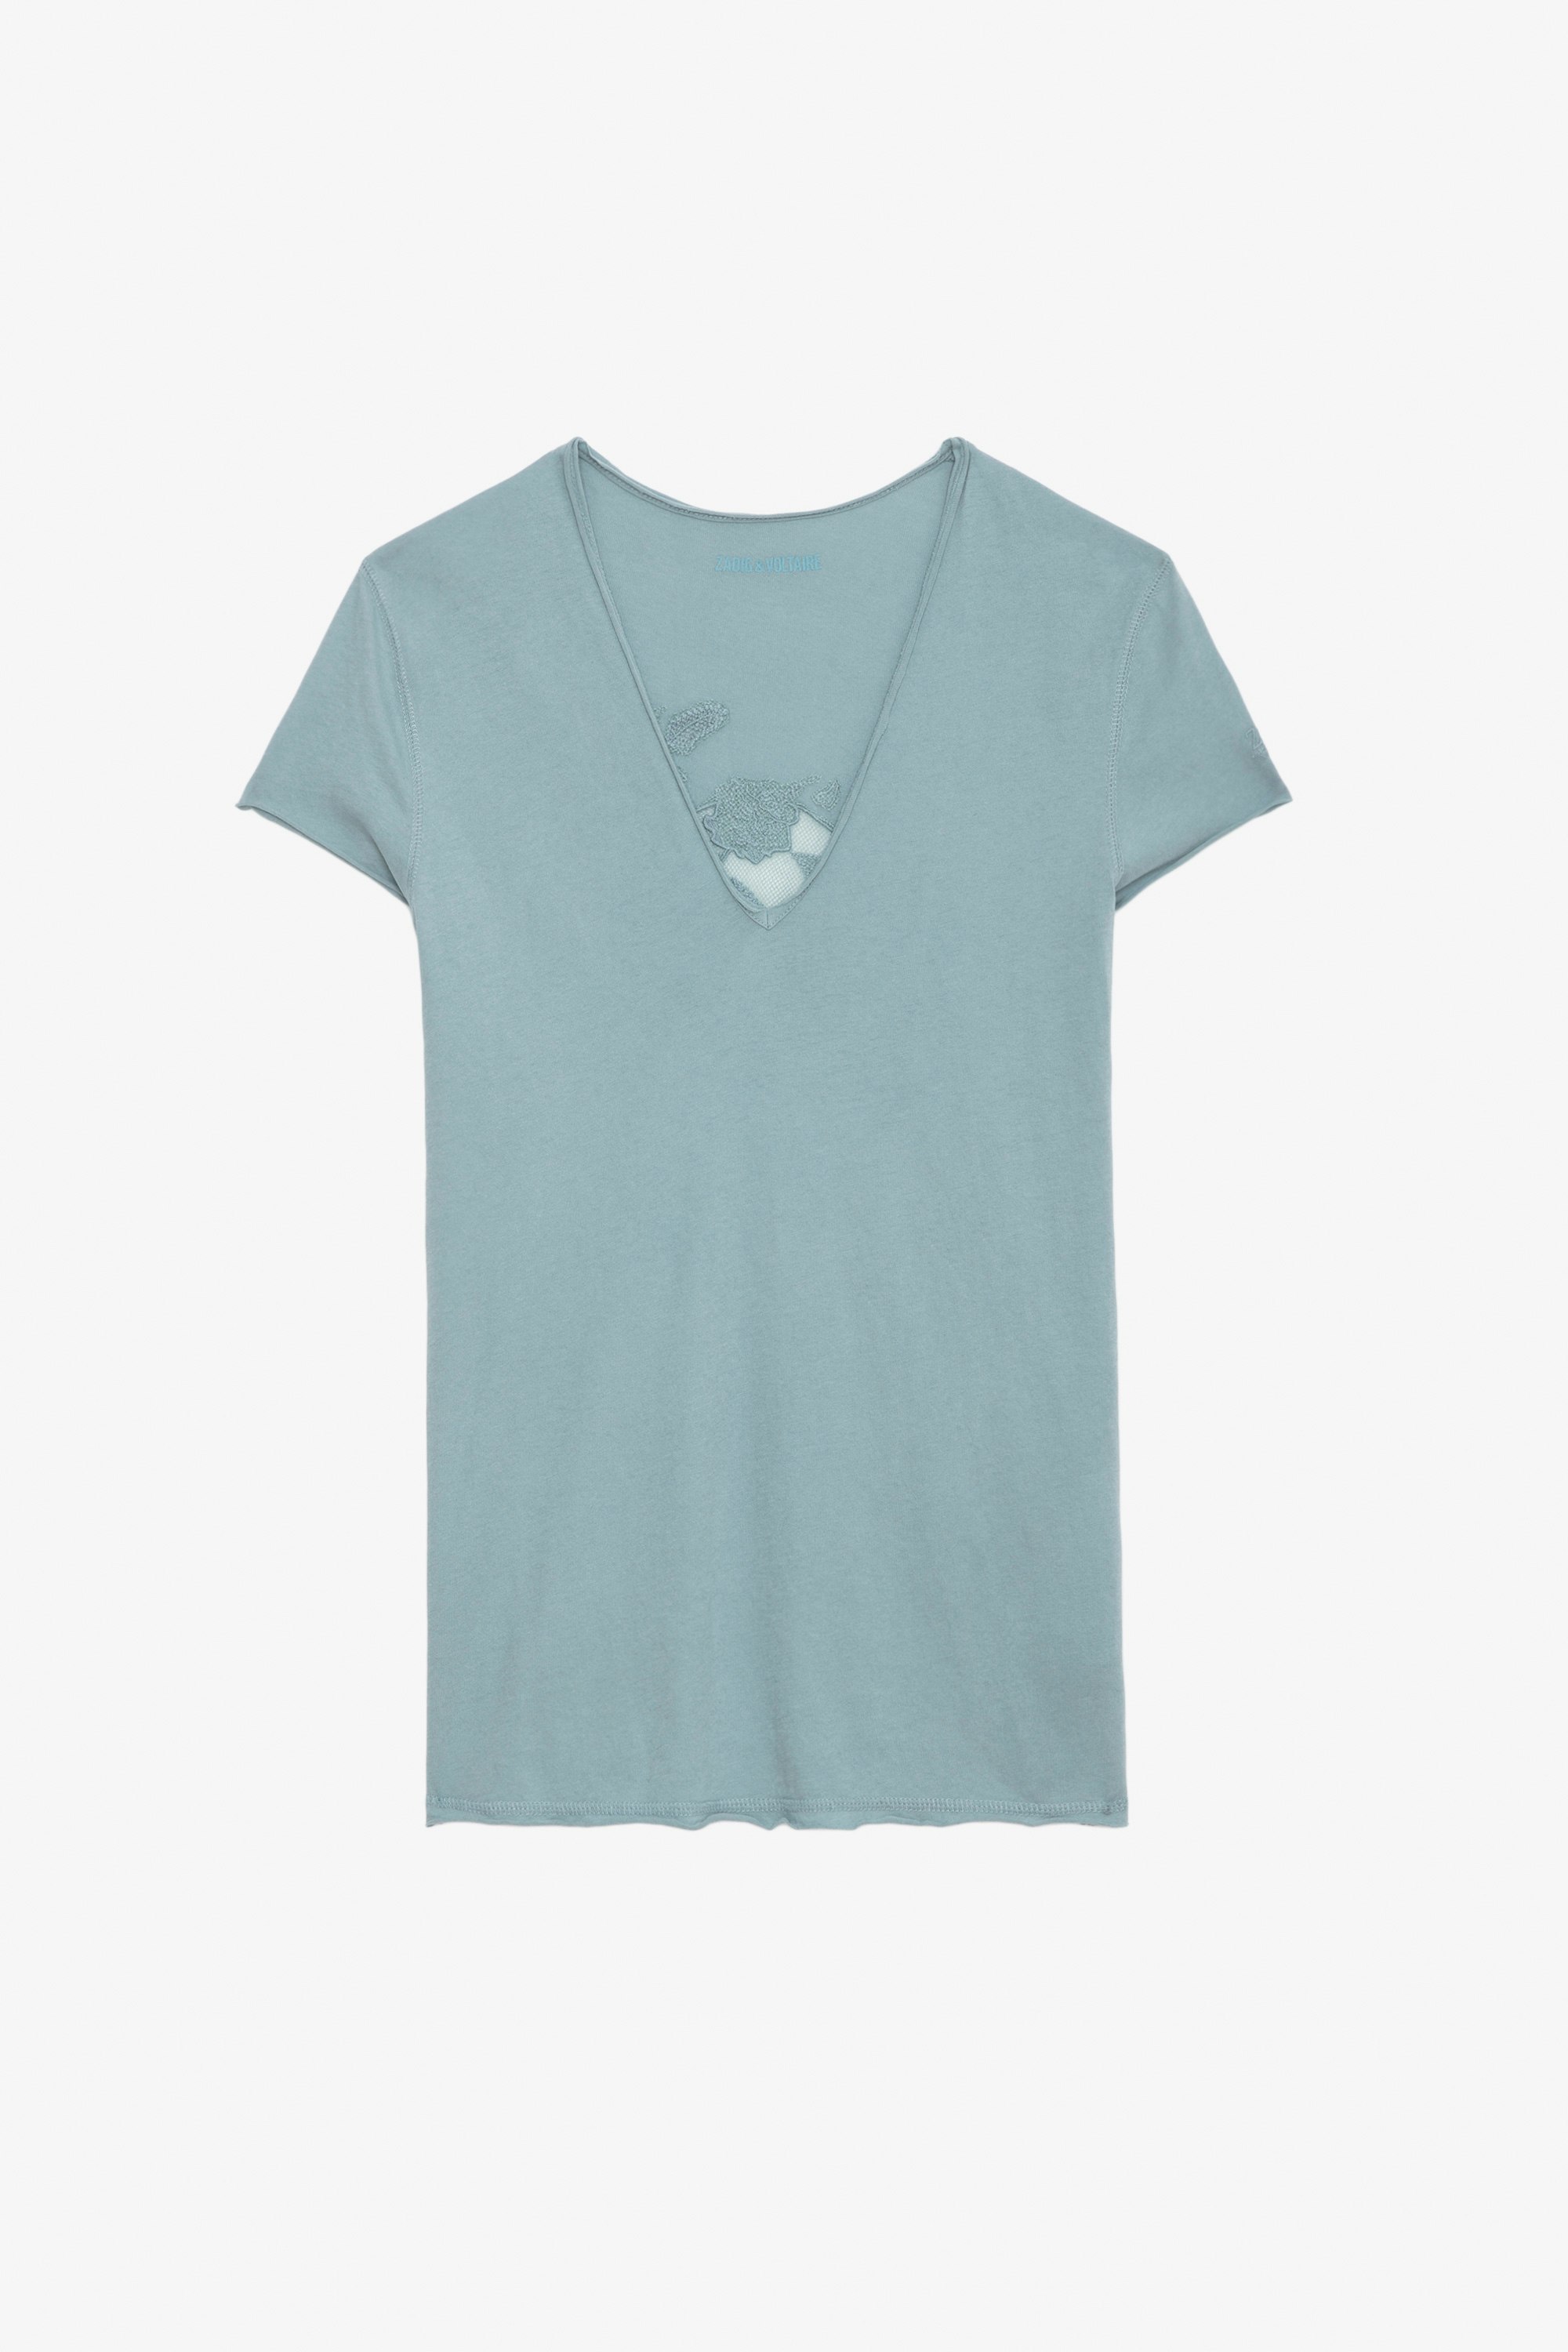 T-shirt Story Fishnet - T-shirt en coton biologique bleu ciel à manches courtes et broderie tête de mort et fleurs au dos.